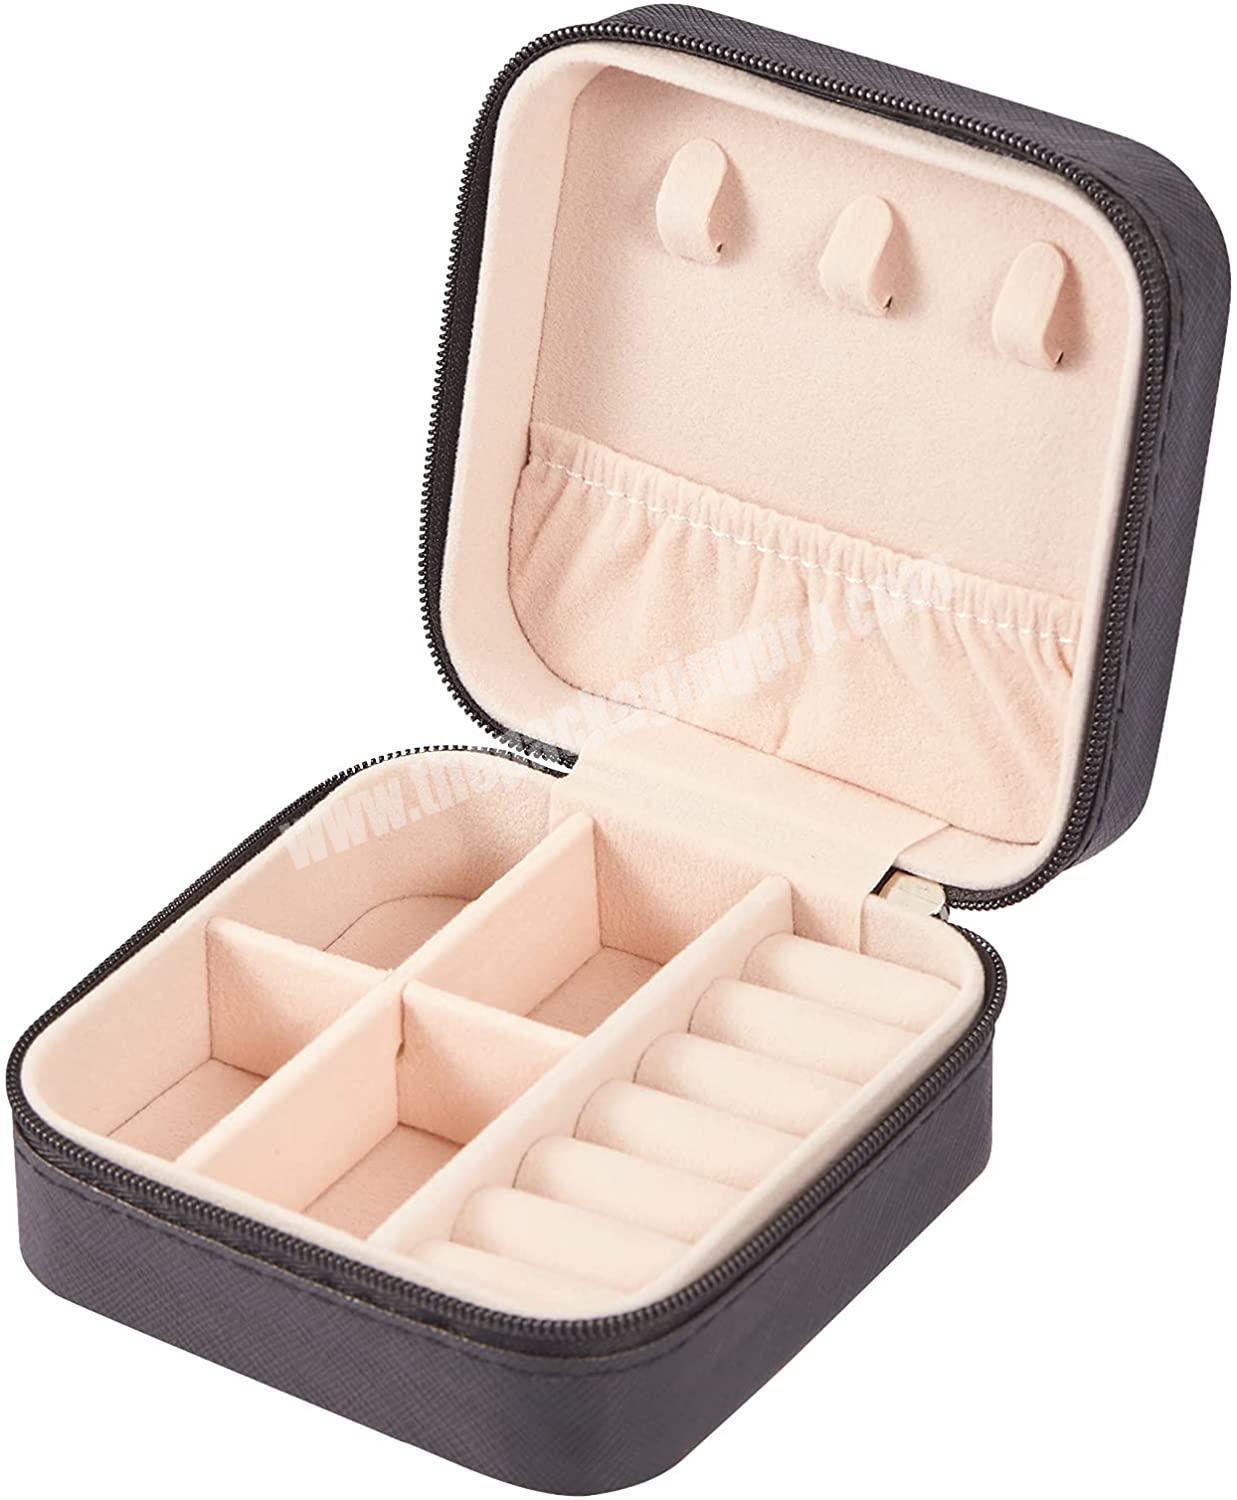 Custom jewelry packaging box black leather travel jewelry storage case organizer with logo